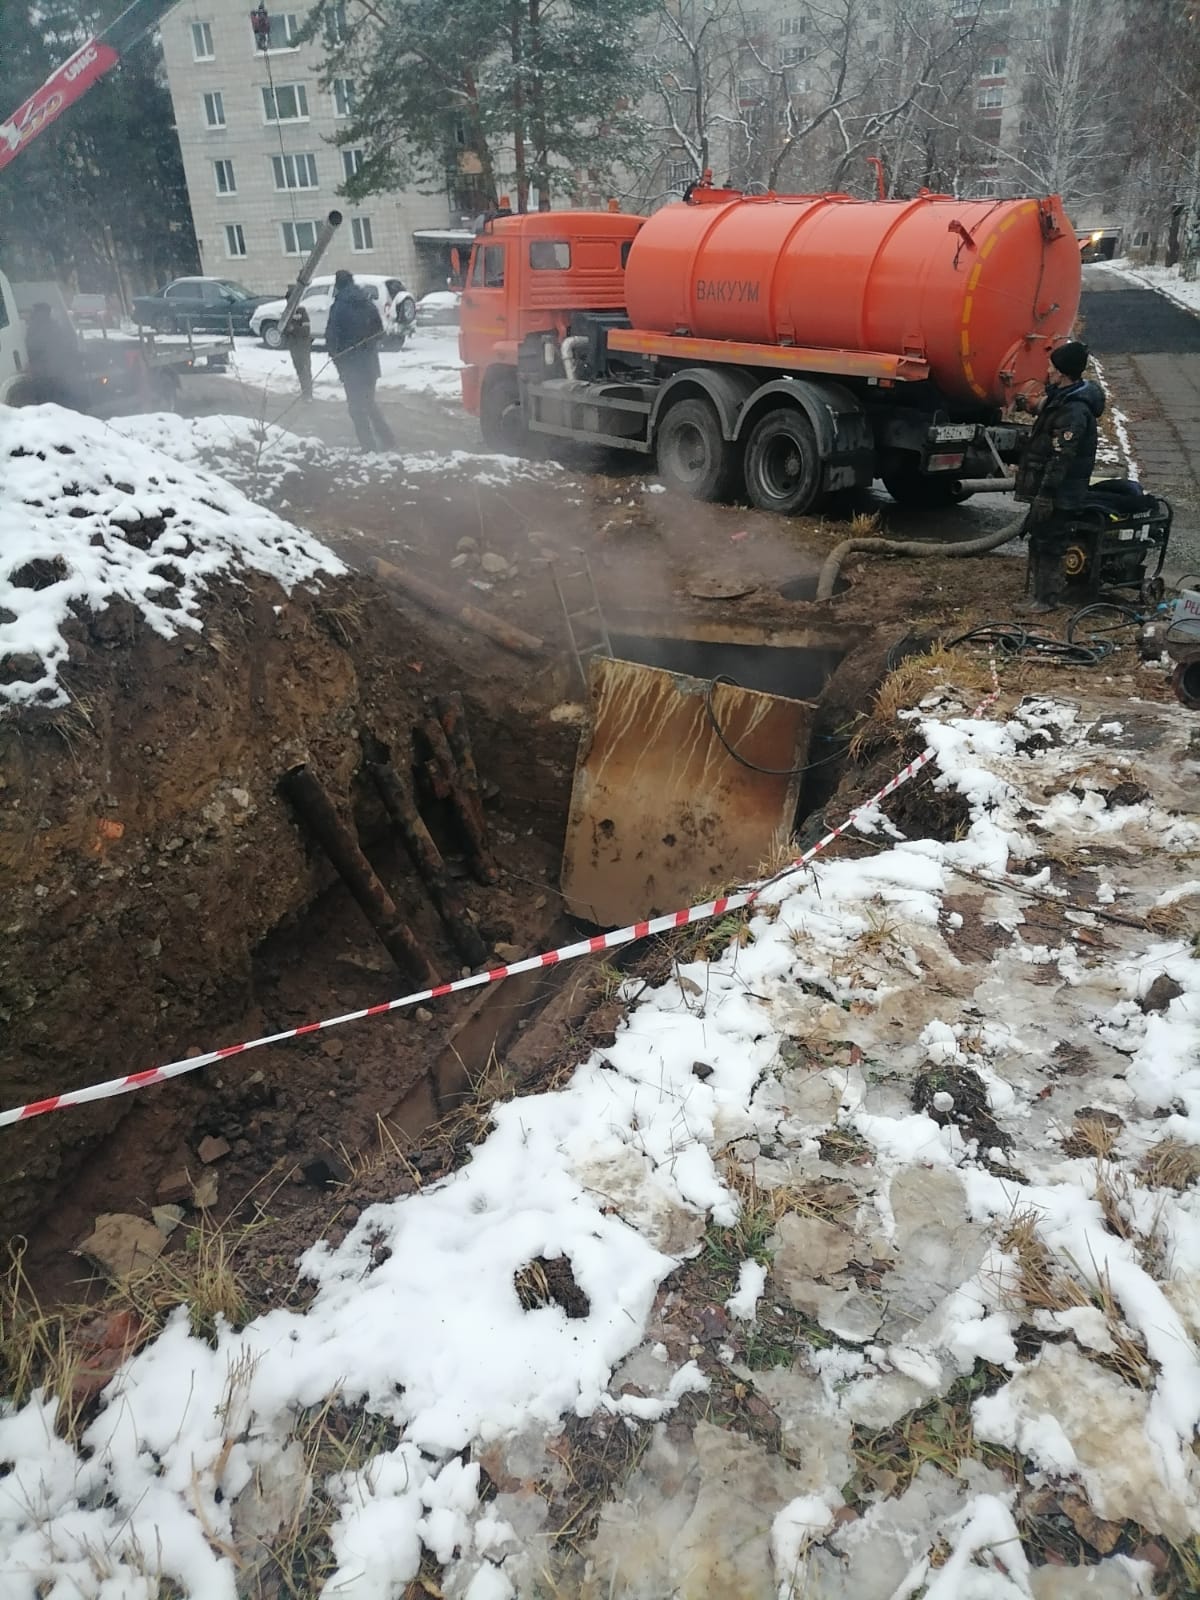 Сотрудники МУП «Искра» устраняли аварию до поздней ночи 31 октября, а 1 ноября яма была уже закопана. Жители ждут восстановления территории